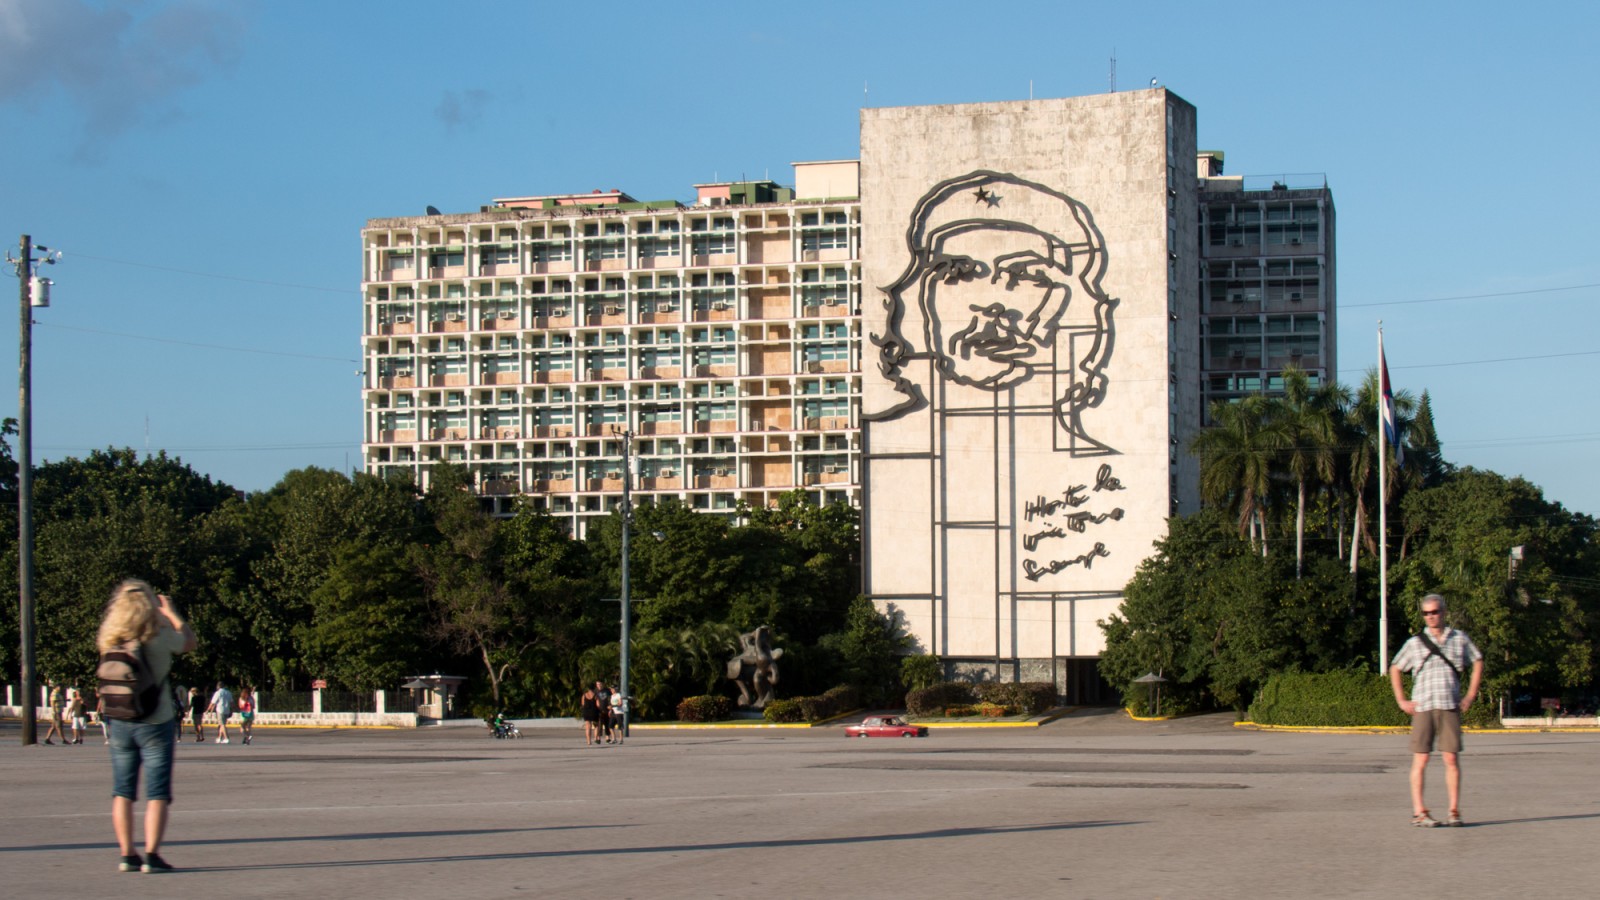 Quảng trường Cách mạng Cuba được xây dựng dưới thời tổng thống Fulgencio Batista cùng với đài tưởng niệm người anh hùng dân tộc Jose Marti. Sau khi Batista bị lật đổ bởi cuộc cách mạng Cuba, quảng trường mới được đổi tên thành như hiện nay. Điểm cuốn hút khách du lịch đến với quảng trường cách mạng Cuba là những bức tranh tường khổng lồ khắc họa chân dung các đồng chí của cố chủ tịch Fidel Castro, đơn cử như chân dung người anh hùng Che Guevara ở trên.